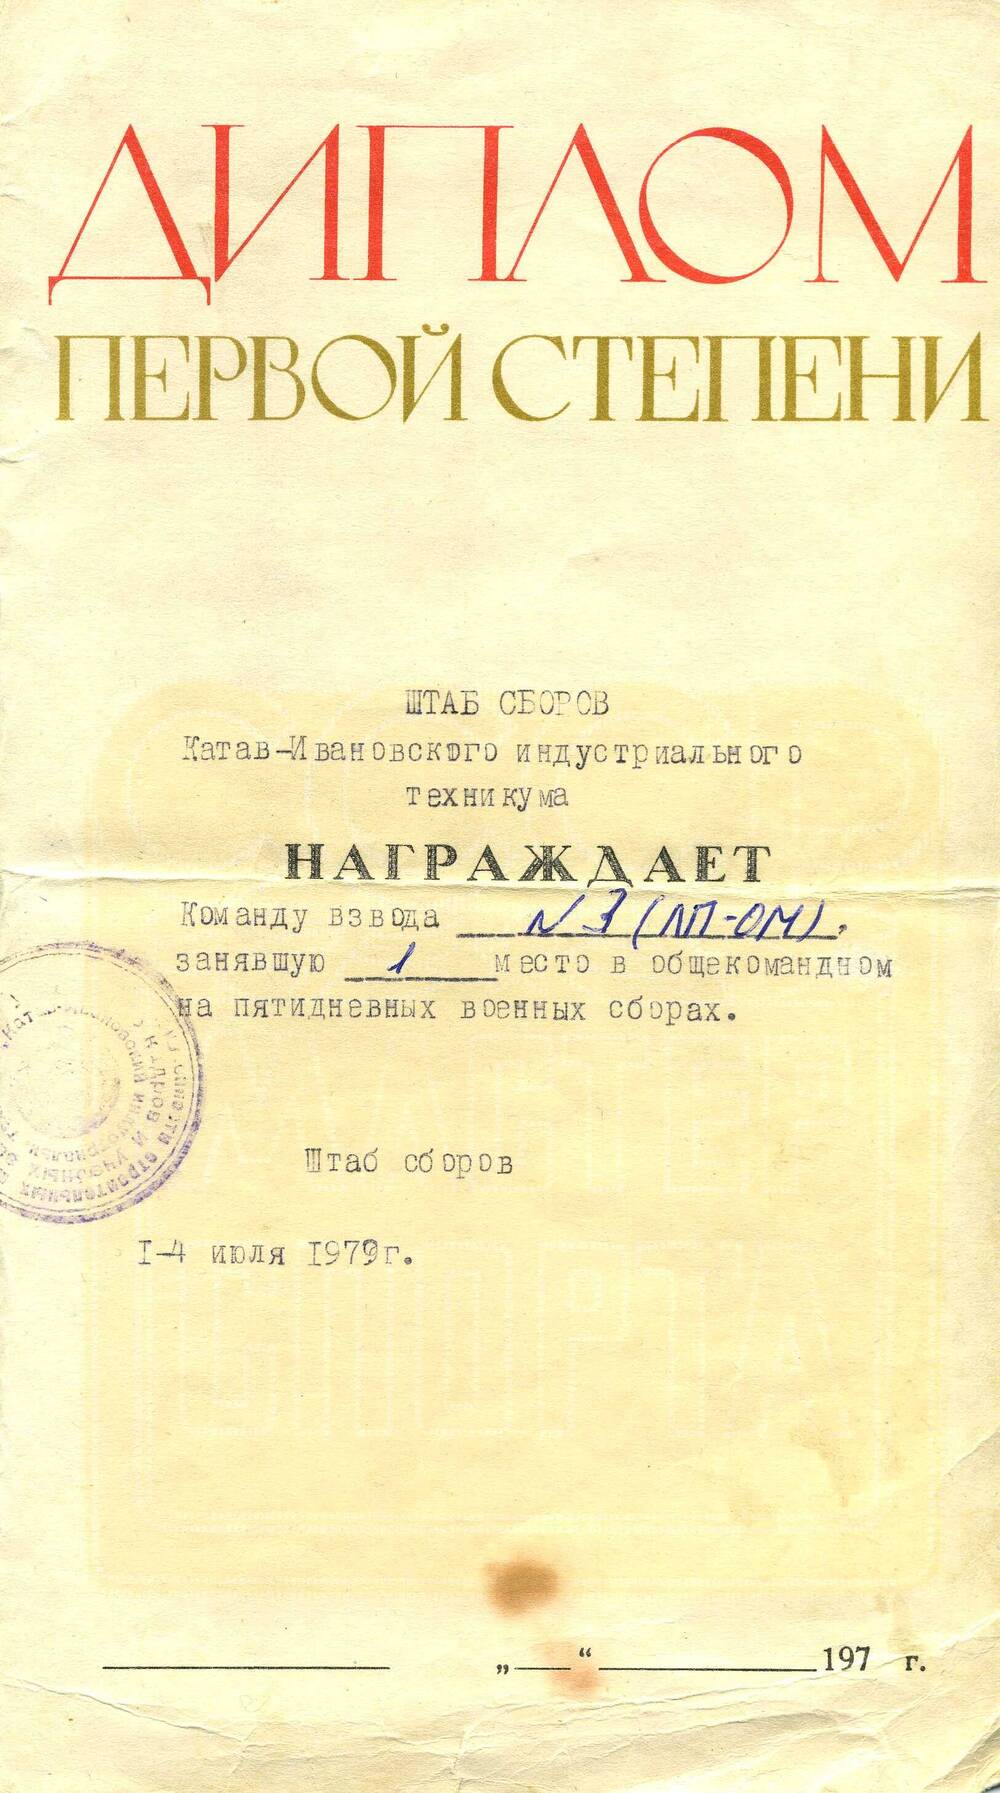 Диплом 1-й степени команде взвода № 3 от штаба сборов КИИТ. июль 1979г.